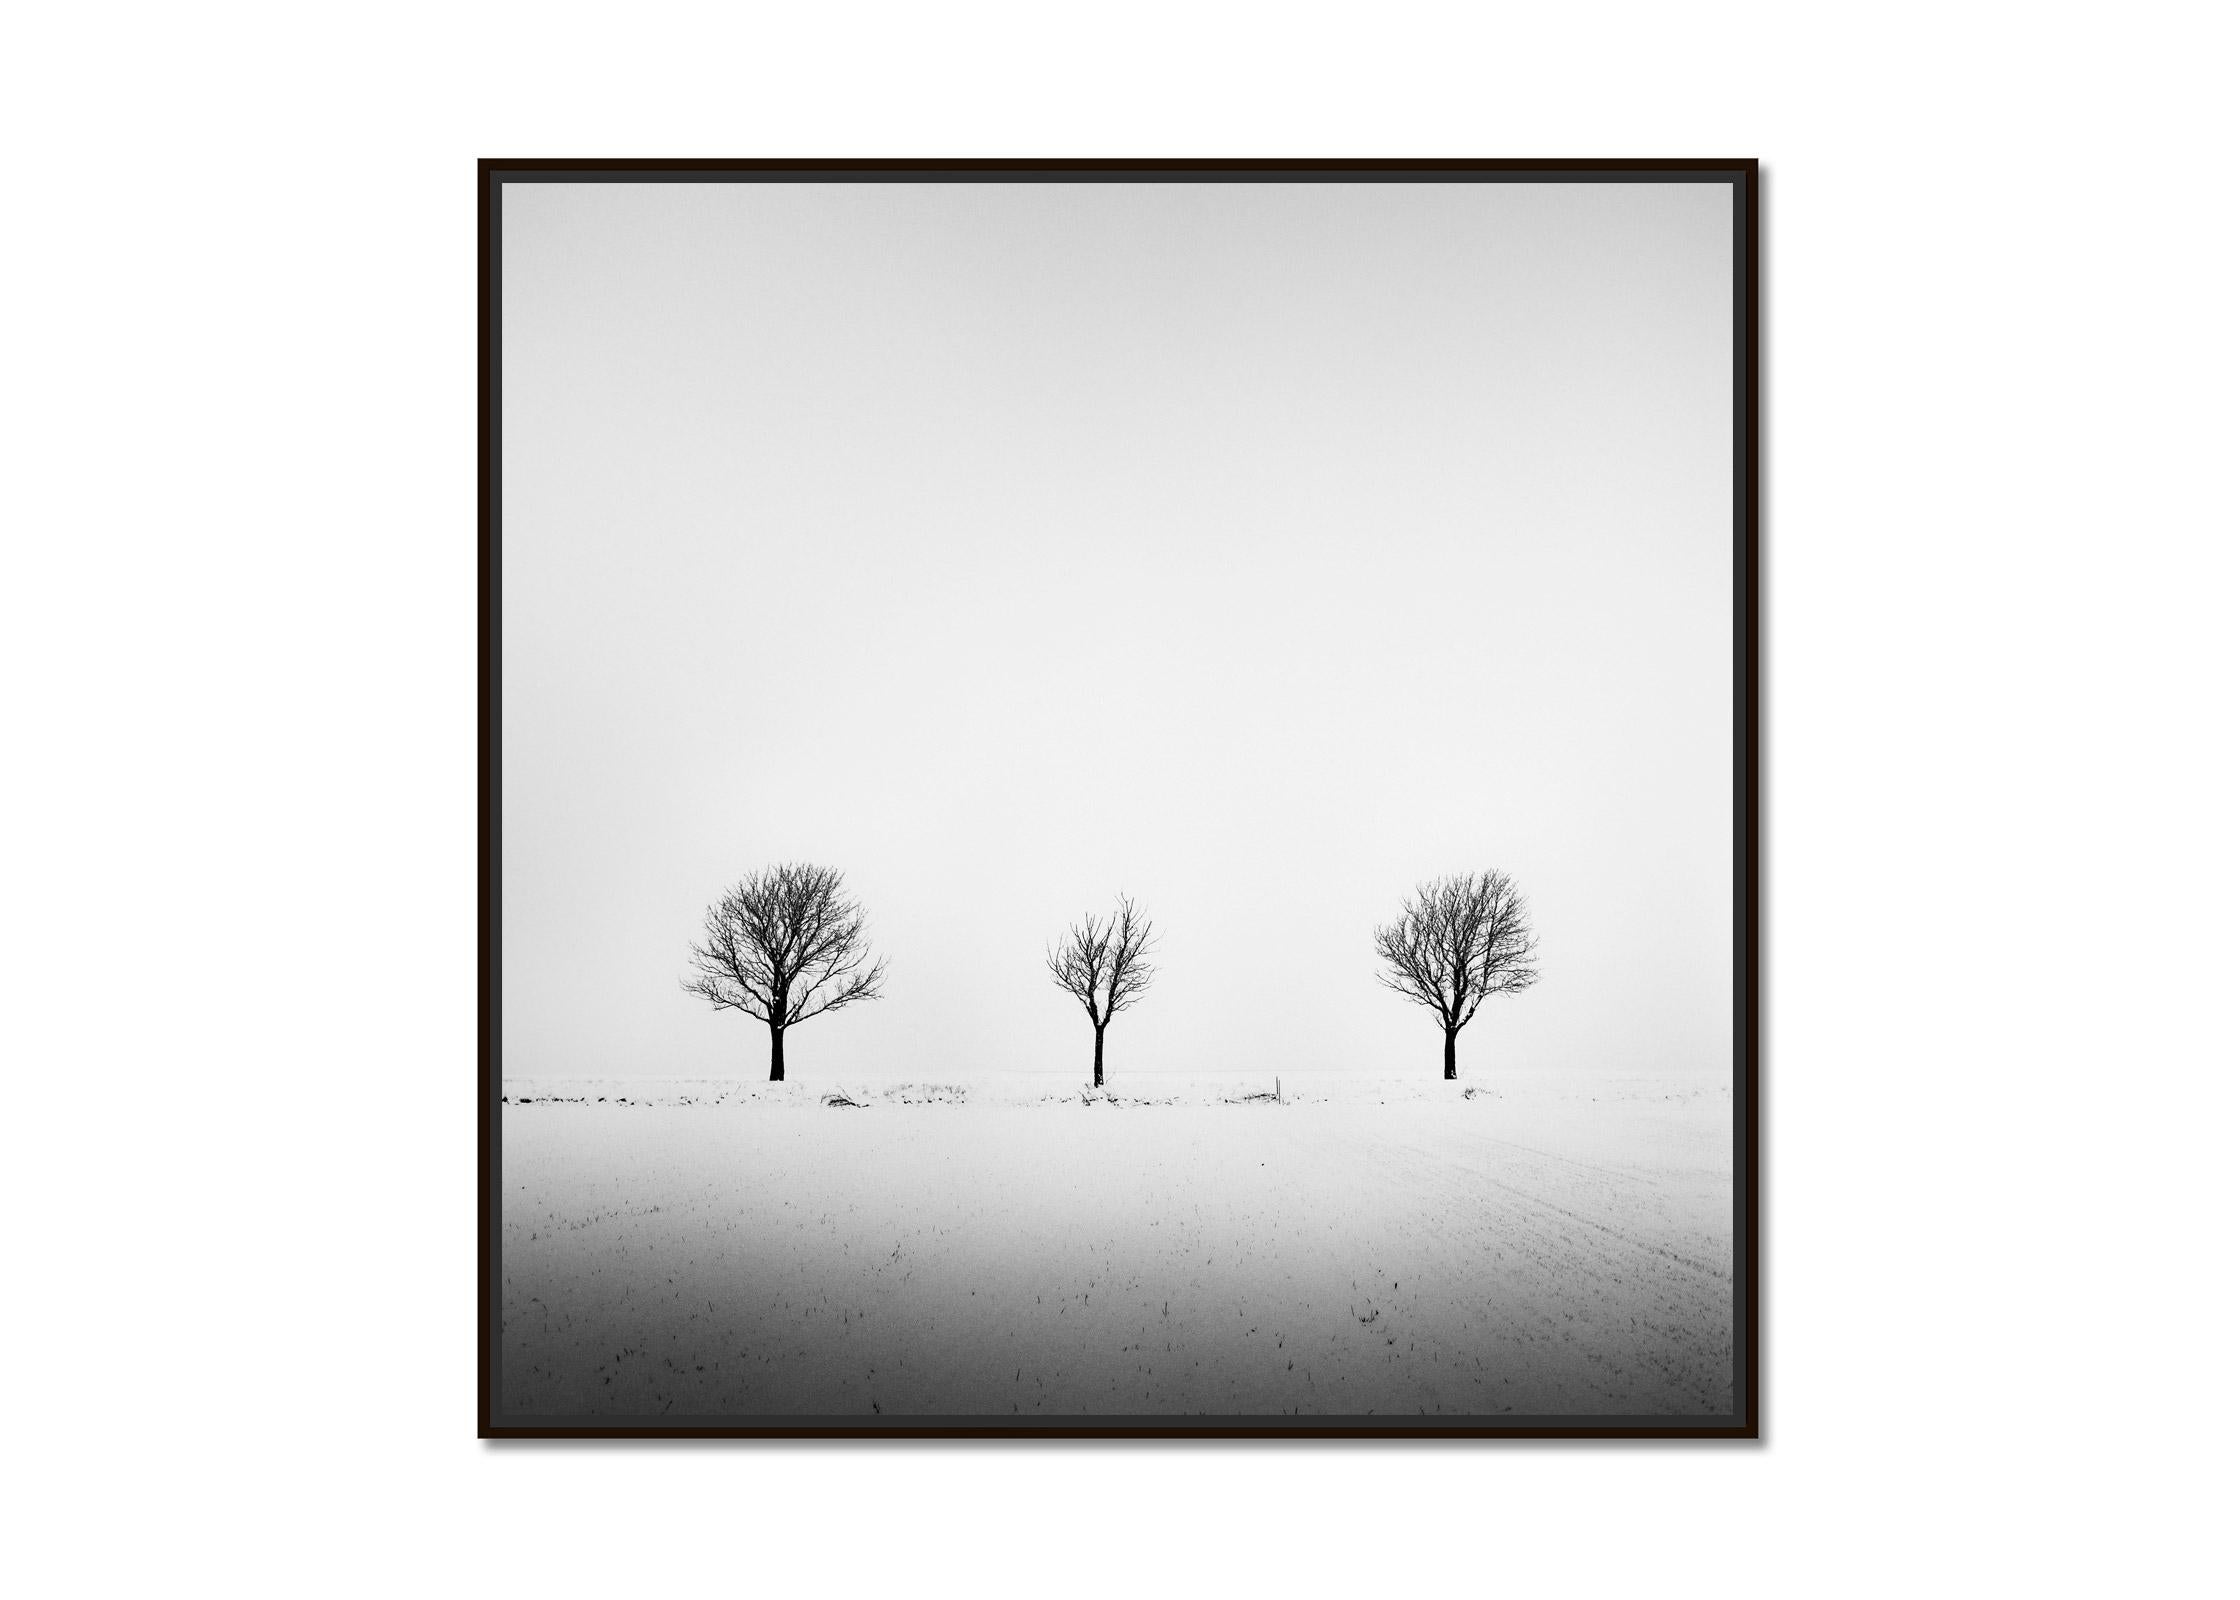 Arbres dans un champ enneigé, art minimal, photographie en noir et blanc, paysage - Photograph de Gerald Berghammer